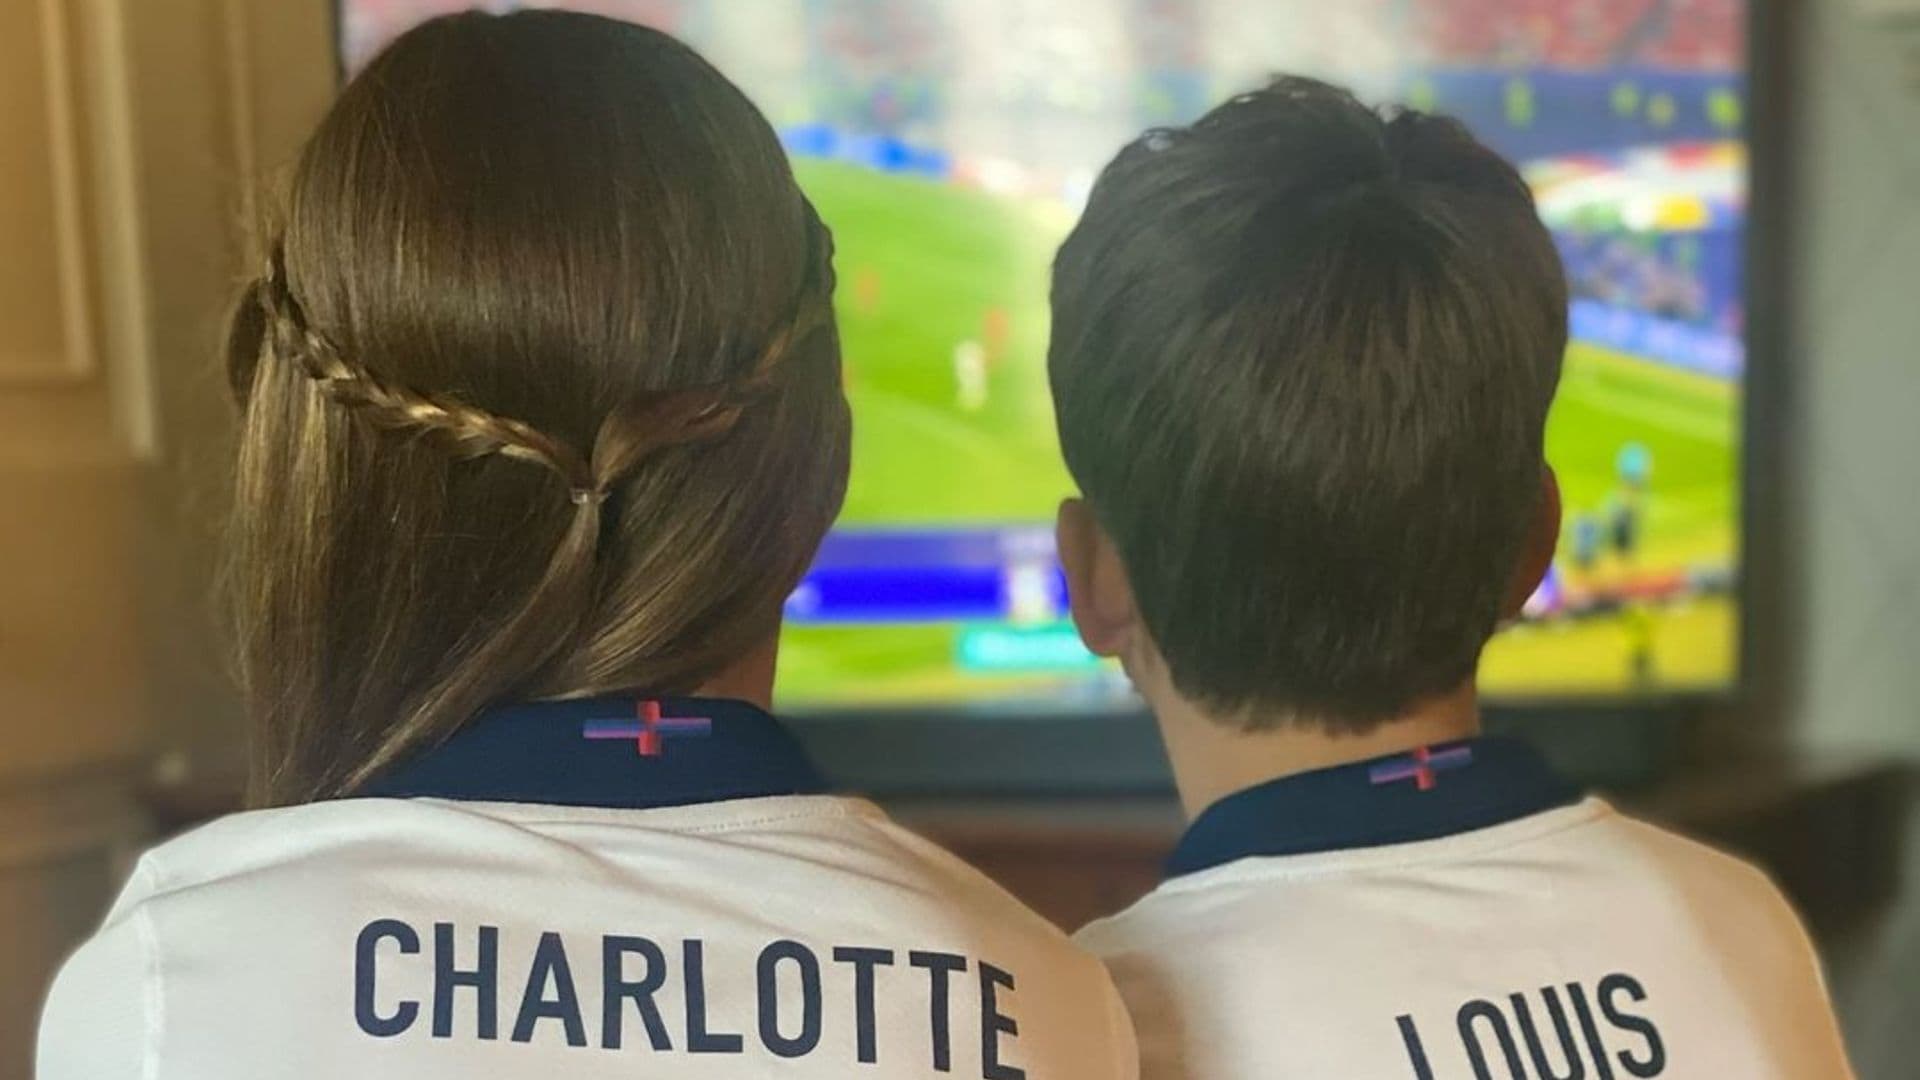 Charlotte y Louis vieron la final de la Eurocopa desde casa perfectamente equipados con las camisetas de la selección inglesa